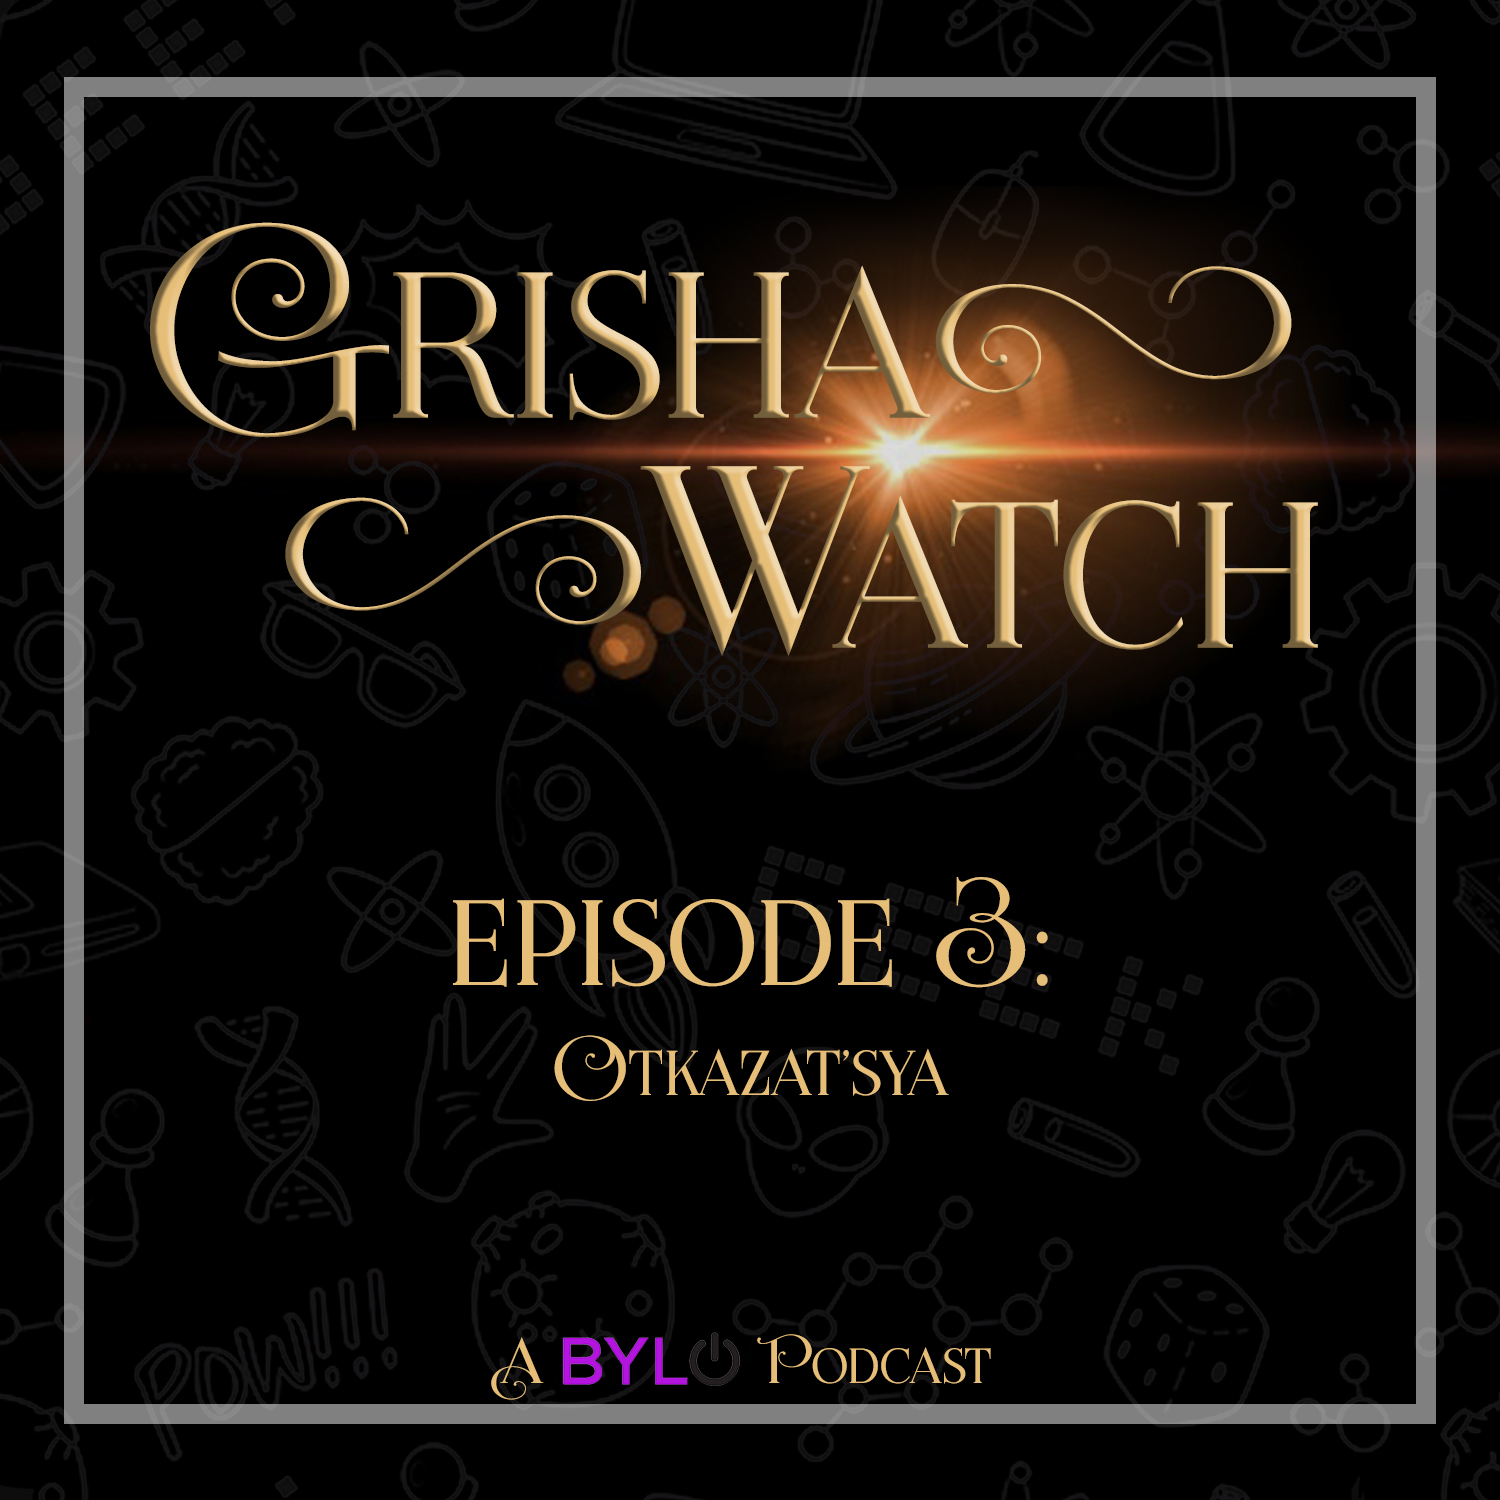 Grisha Watch ep 03: "Otkazat'sya"